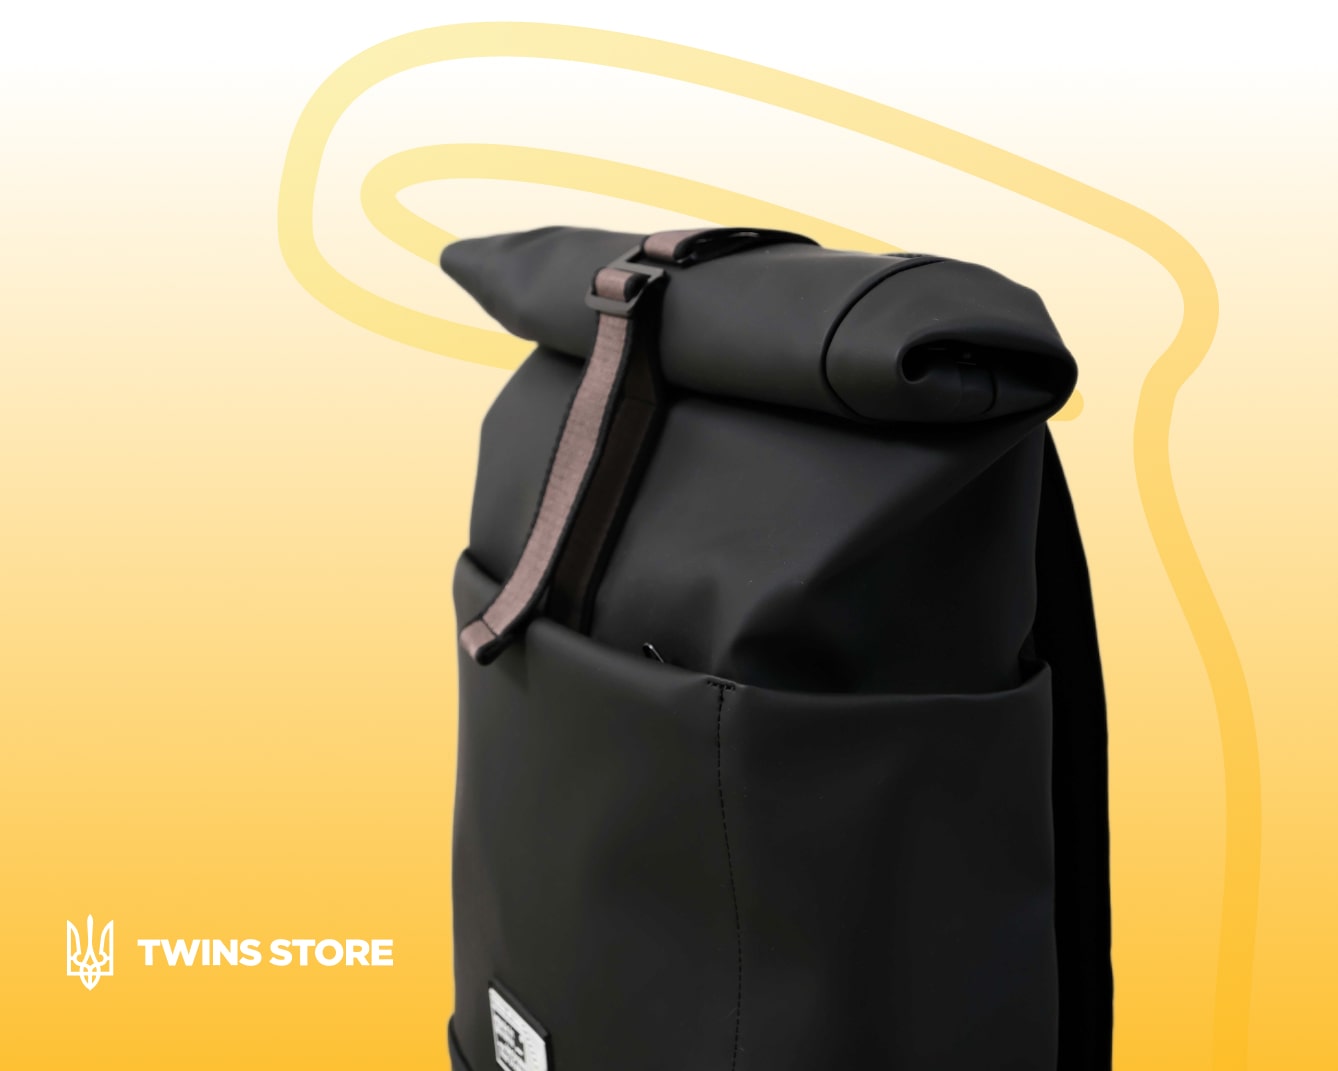  заказать стильный рюкзак роллтоп на Twinsstore